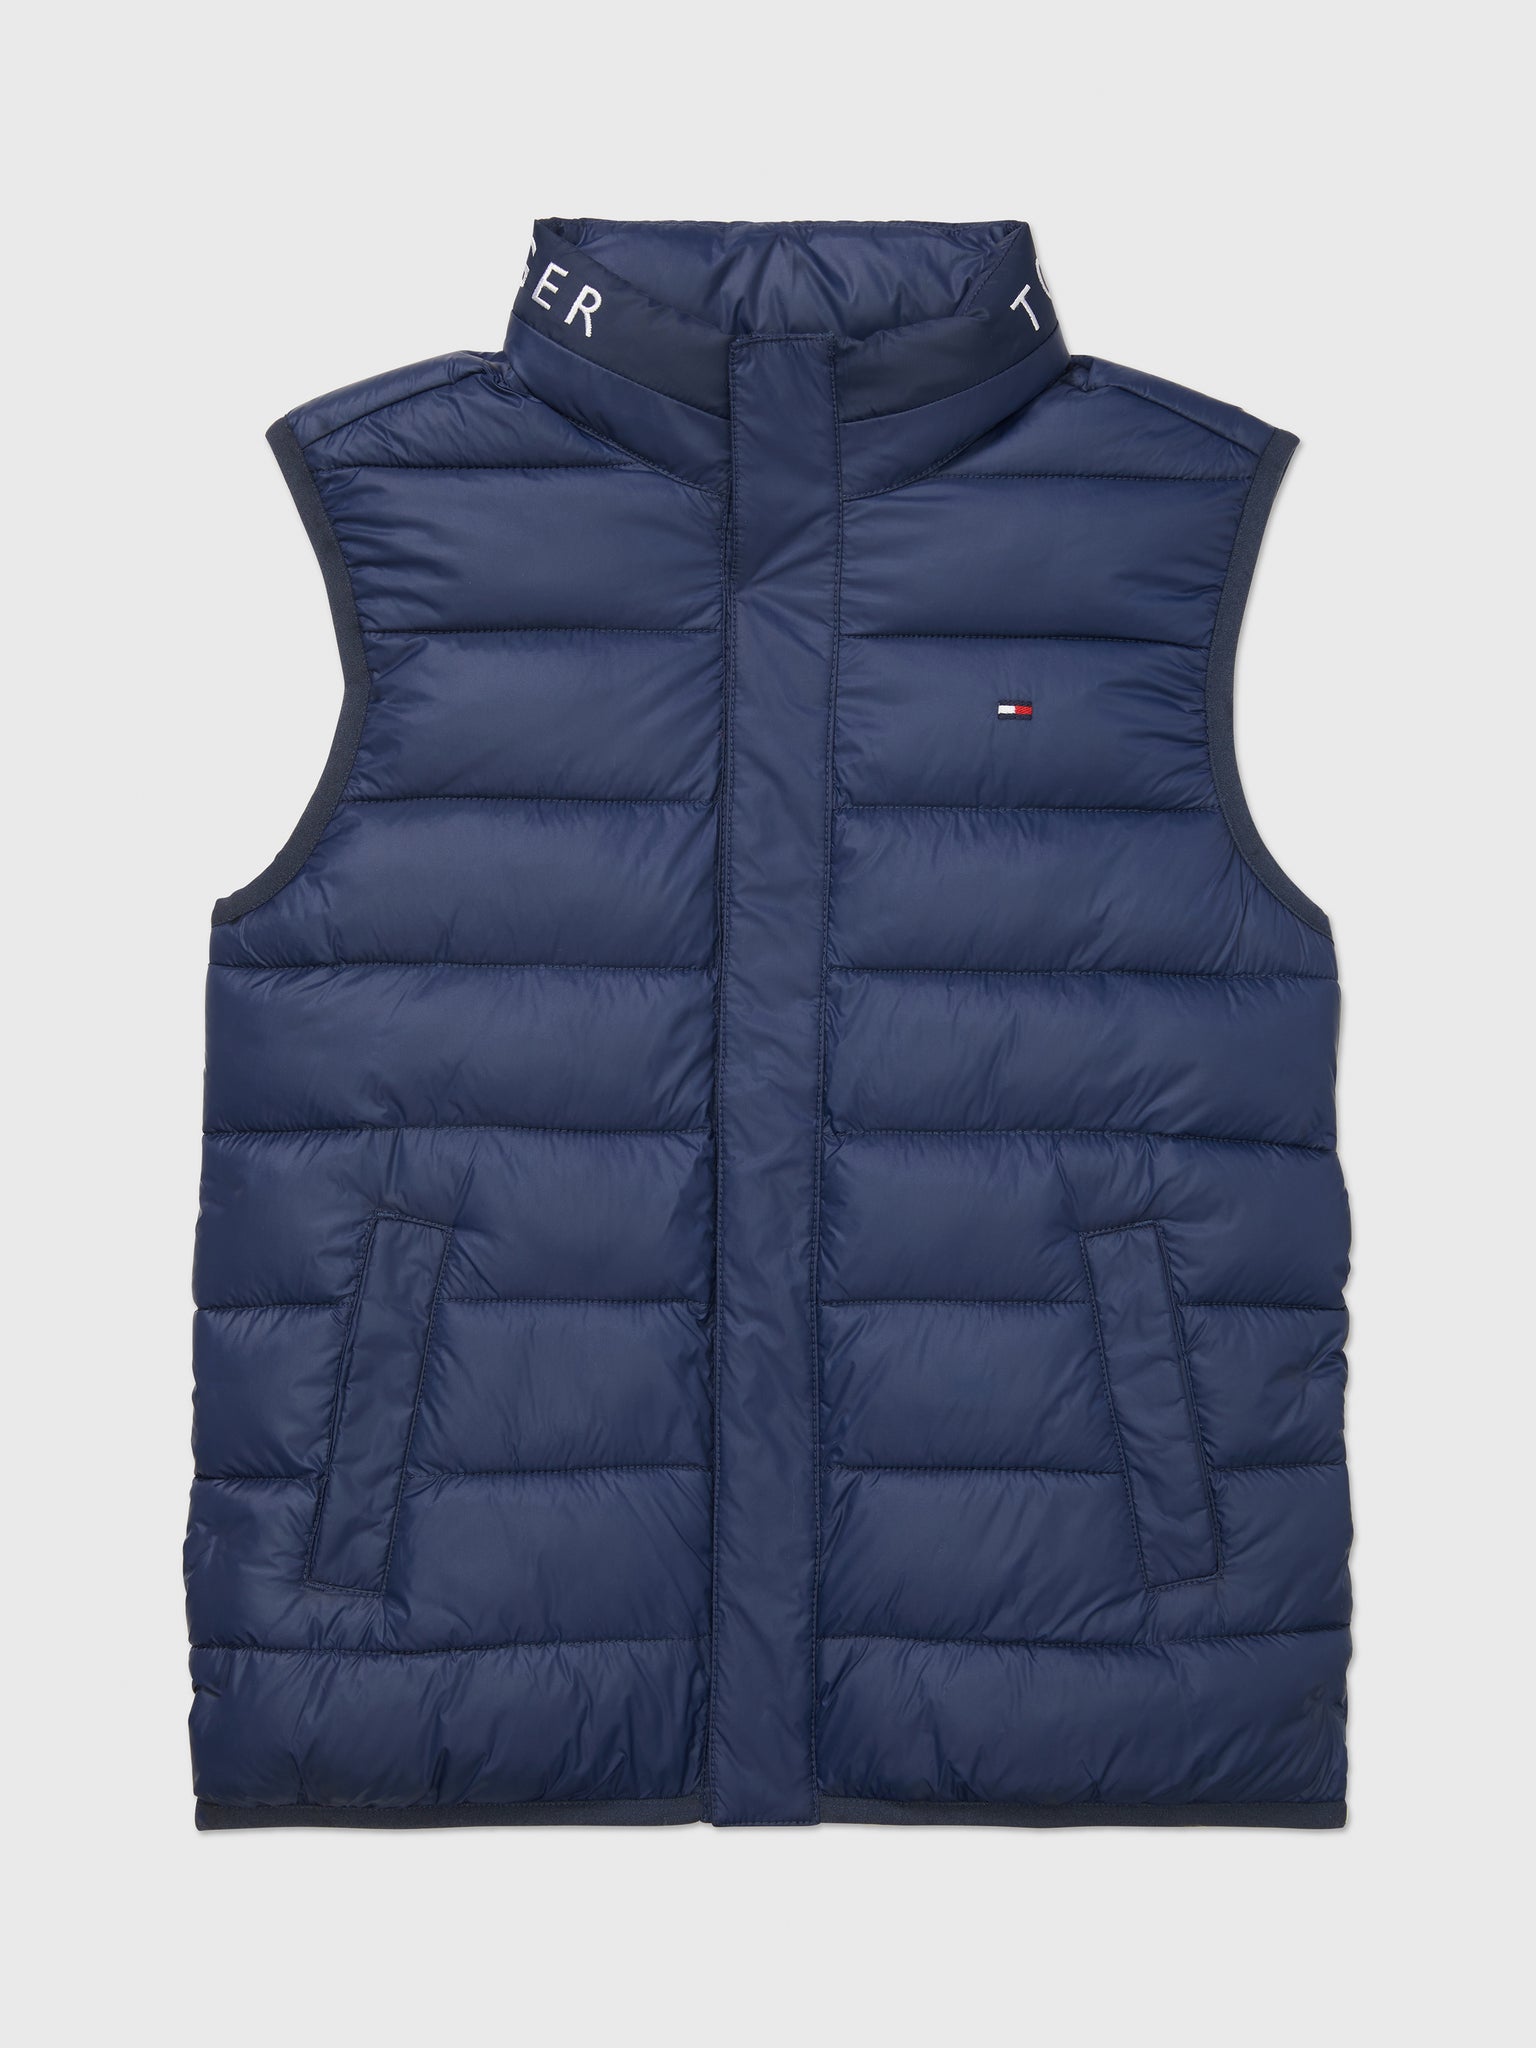 Lightweight Puffer Vest (Kids) - Cobalt Saphire